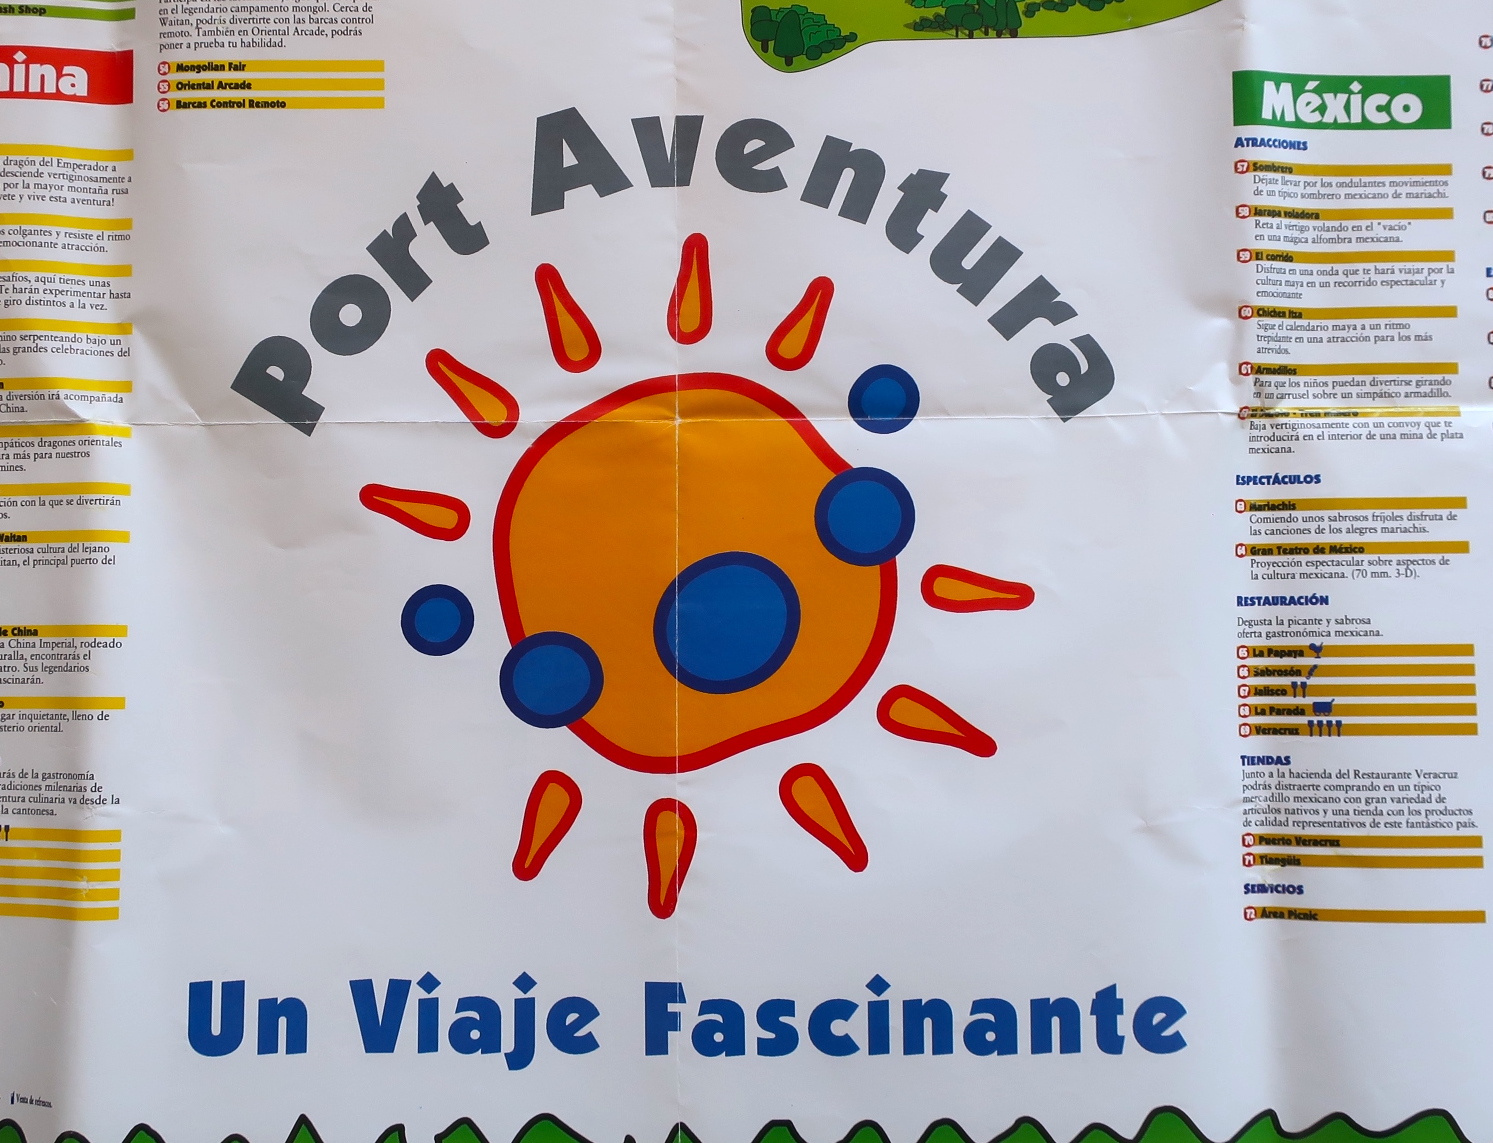 El primer mapa de PortAventura en 1994